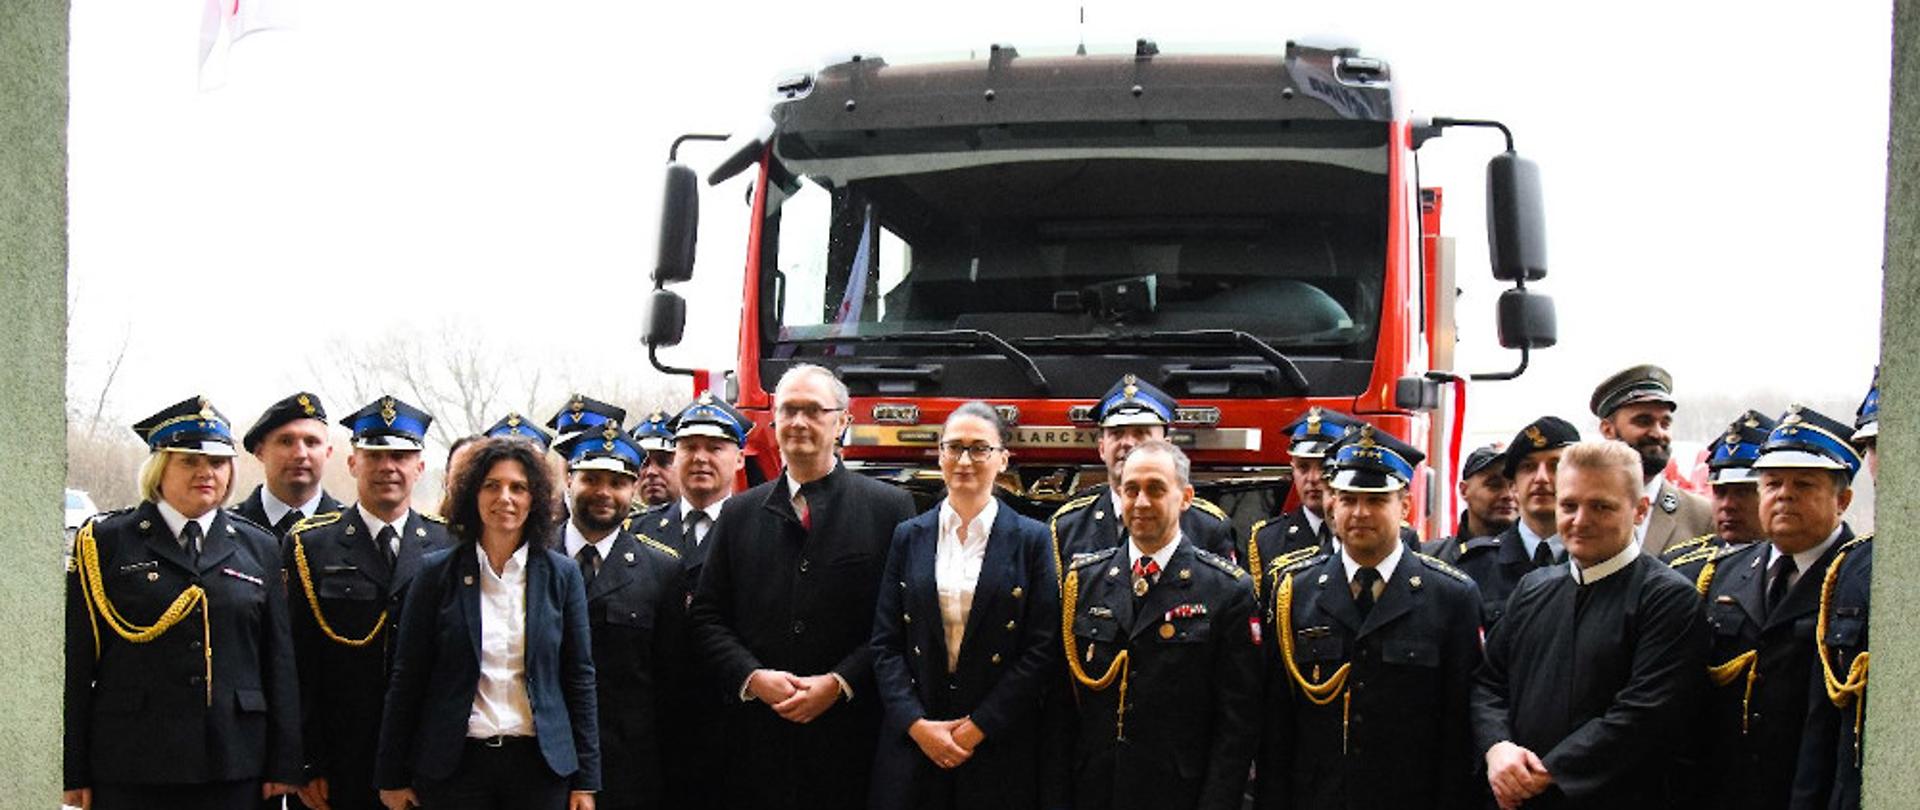 Przekazanie nowych samochodów pożarniczych - strażacy ubrani w mundury wyjściowe stoją na tle nowego samochodu ratowniczo-gaśniczego